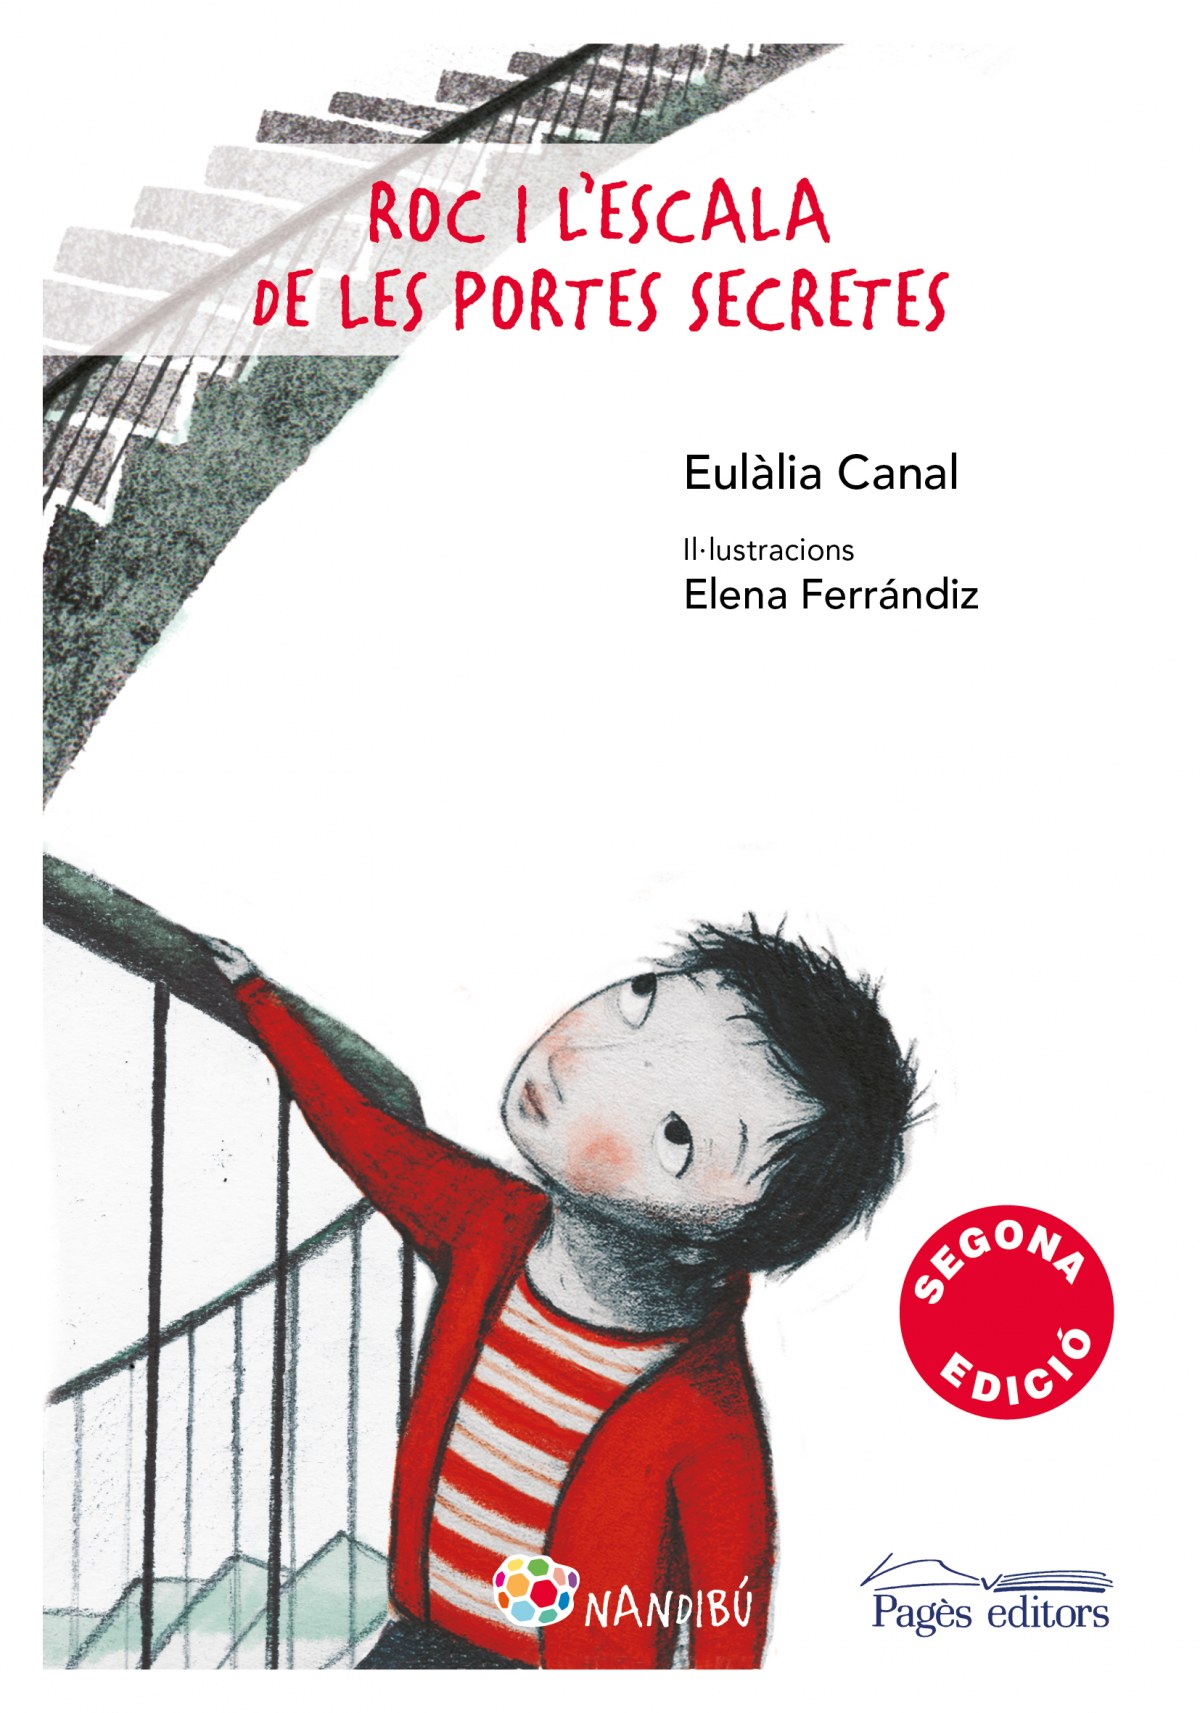 En Roc i l'escala de les portes secretes - Canal Iglesias, E./Ferrandiz Rueda, E.